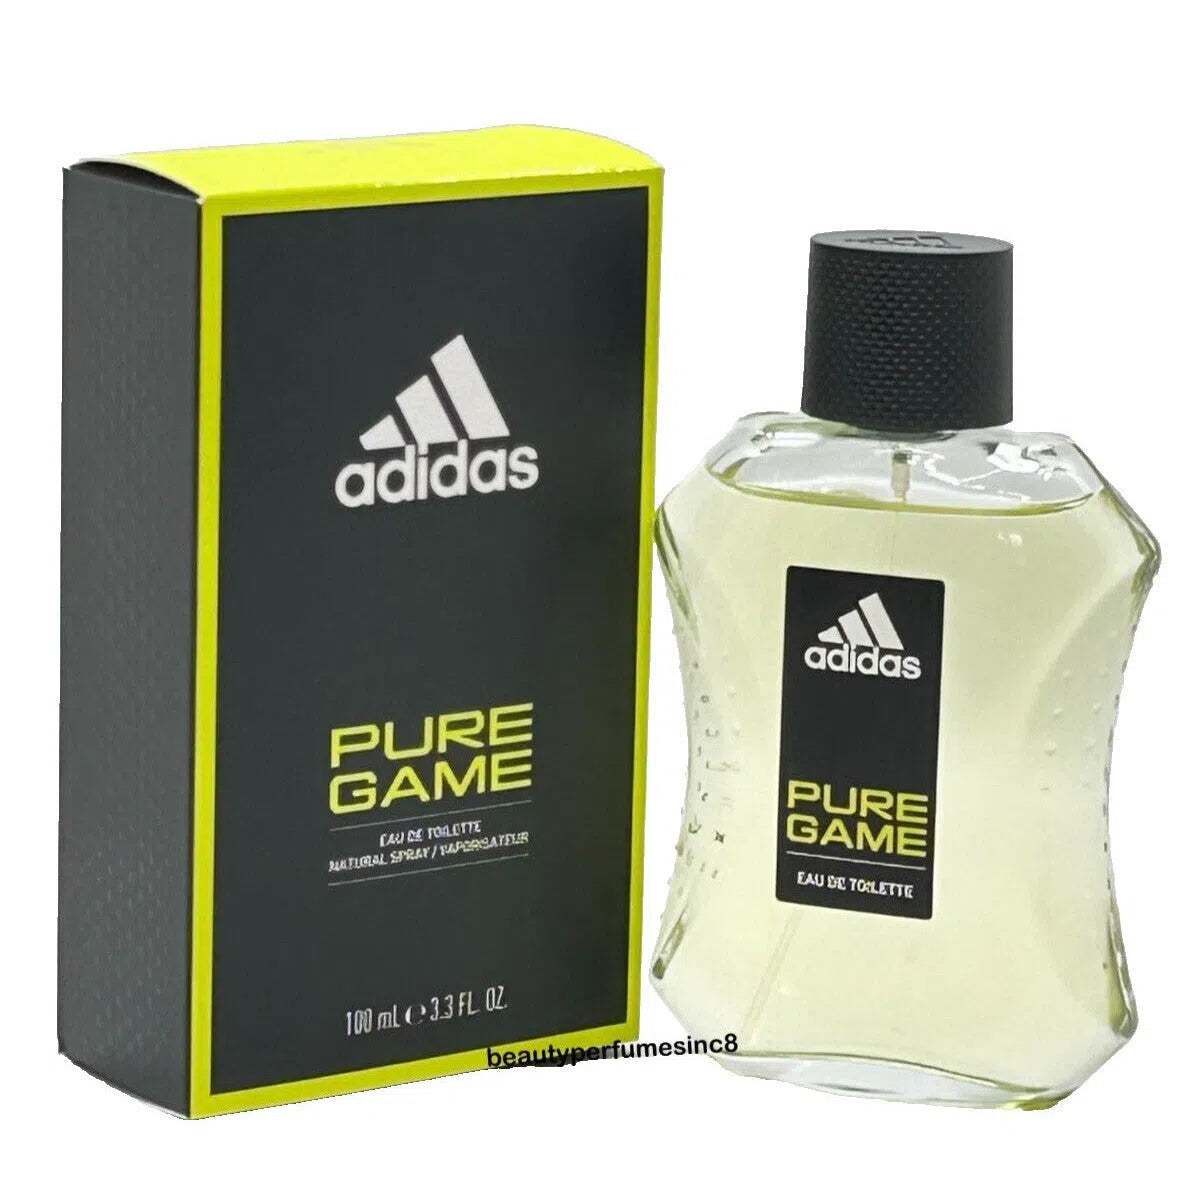 Perfume Adidas Pure Game EDT (M) / 100 ml - 3616303322021- 1 - Prive Perfumes Honduras